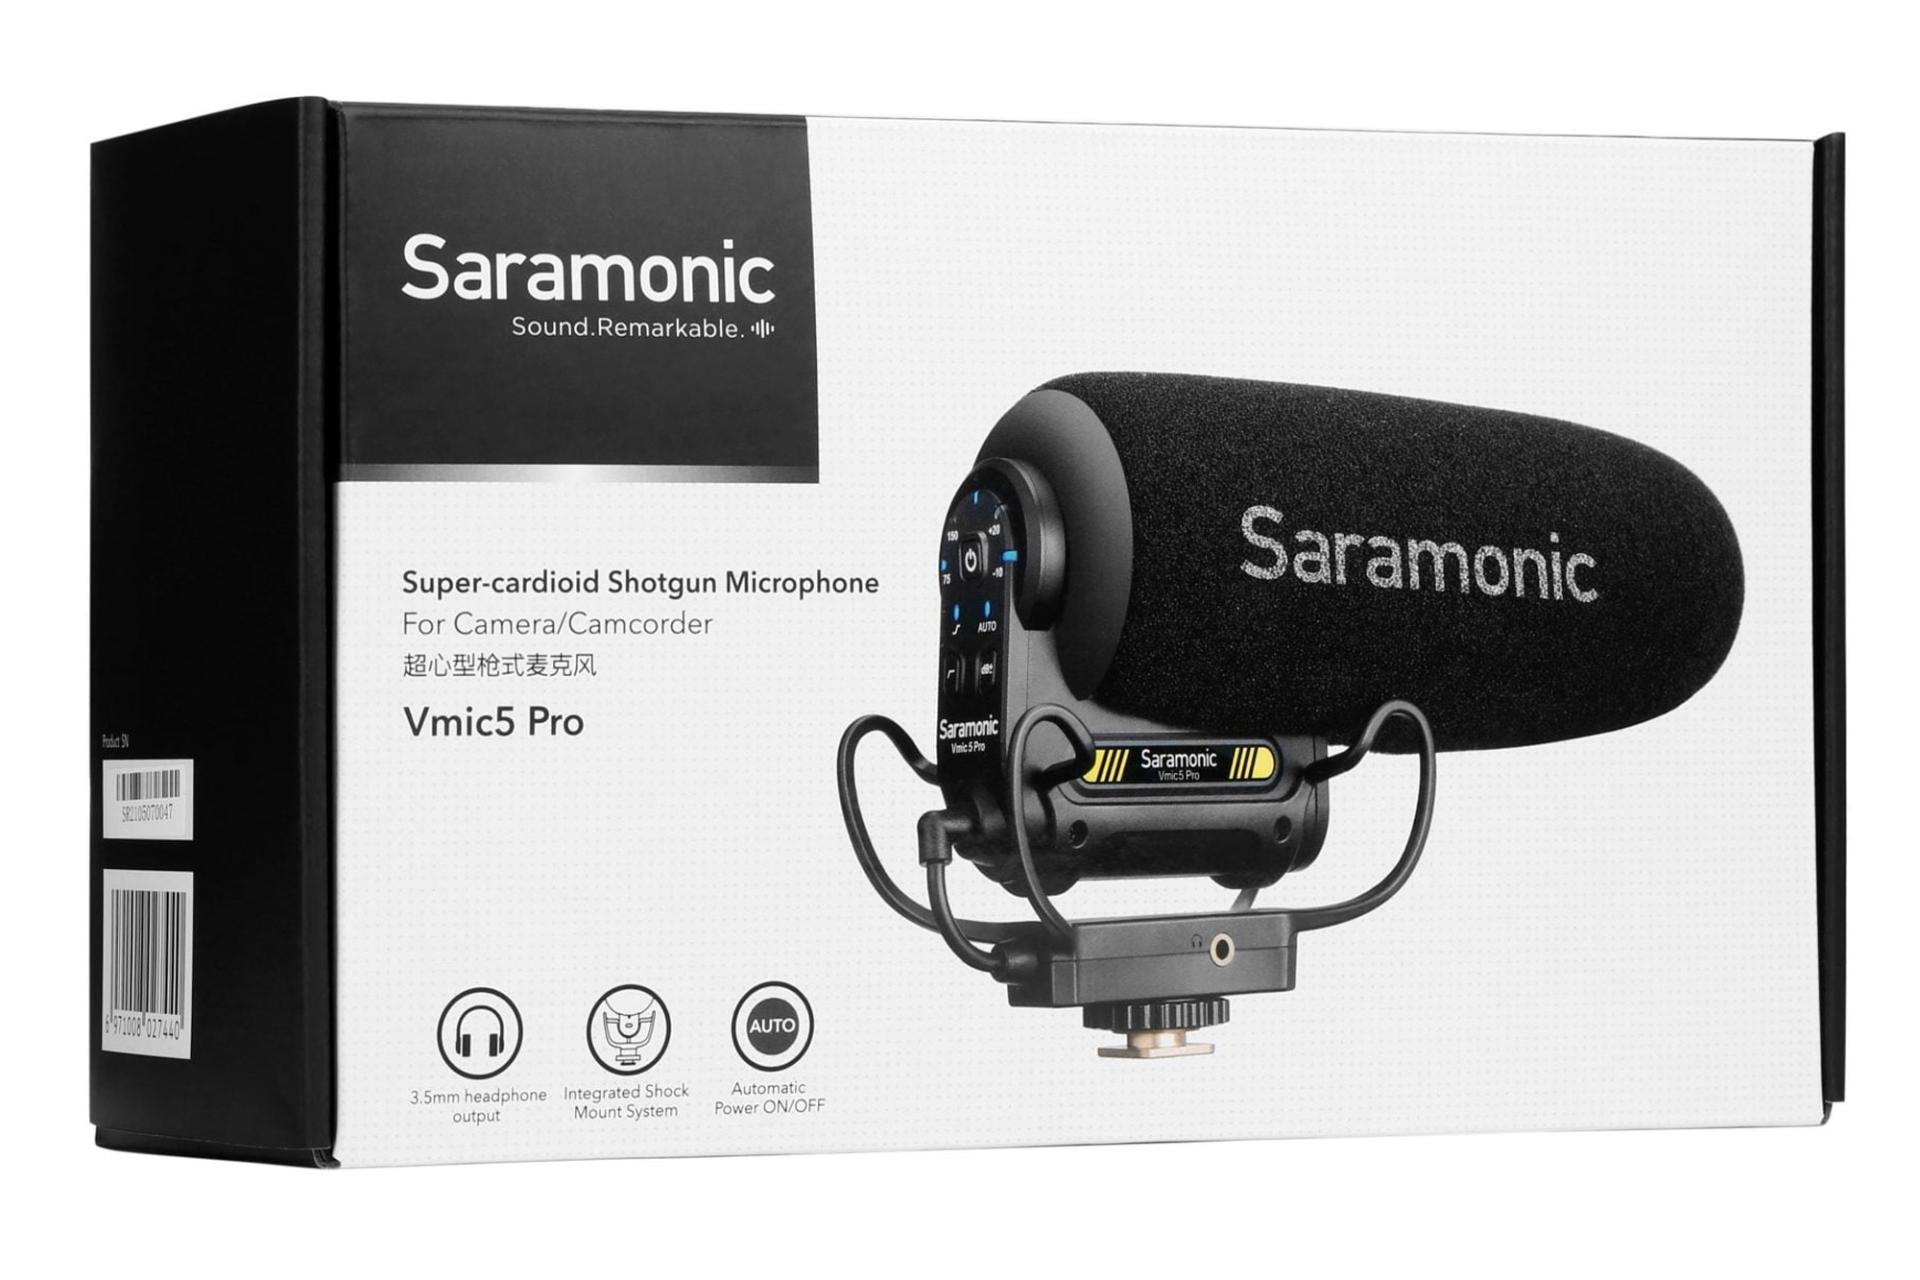 جعبه میکروفون سارامونیک Saramonic Vmic5 Pro